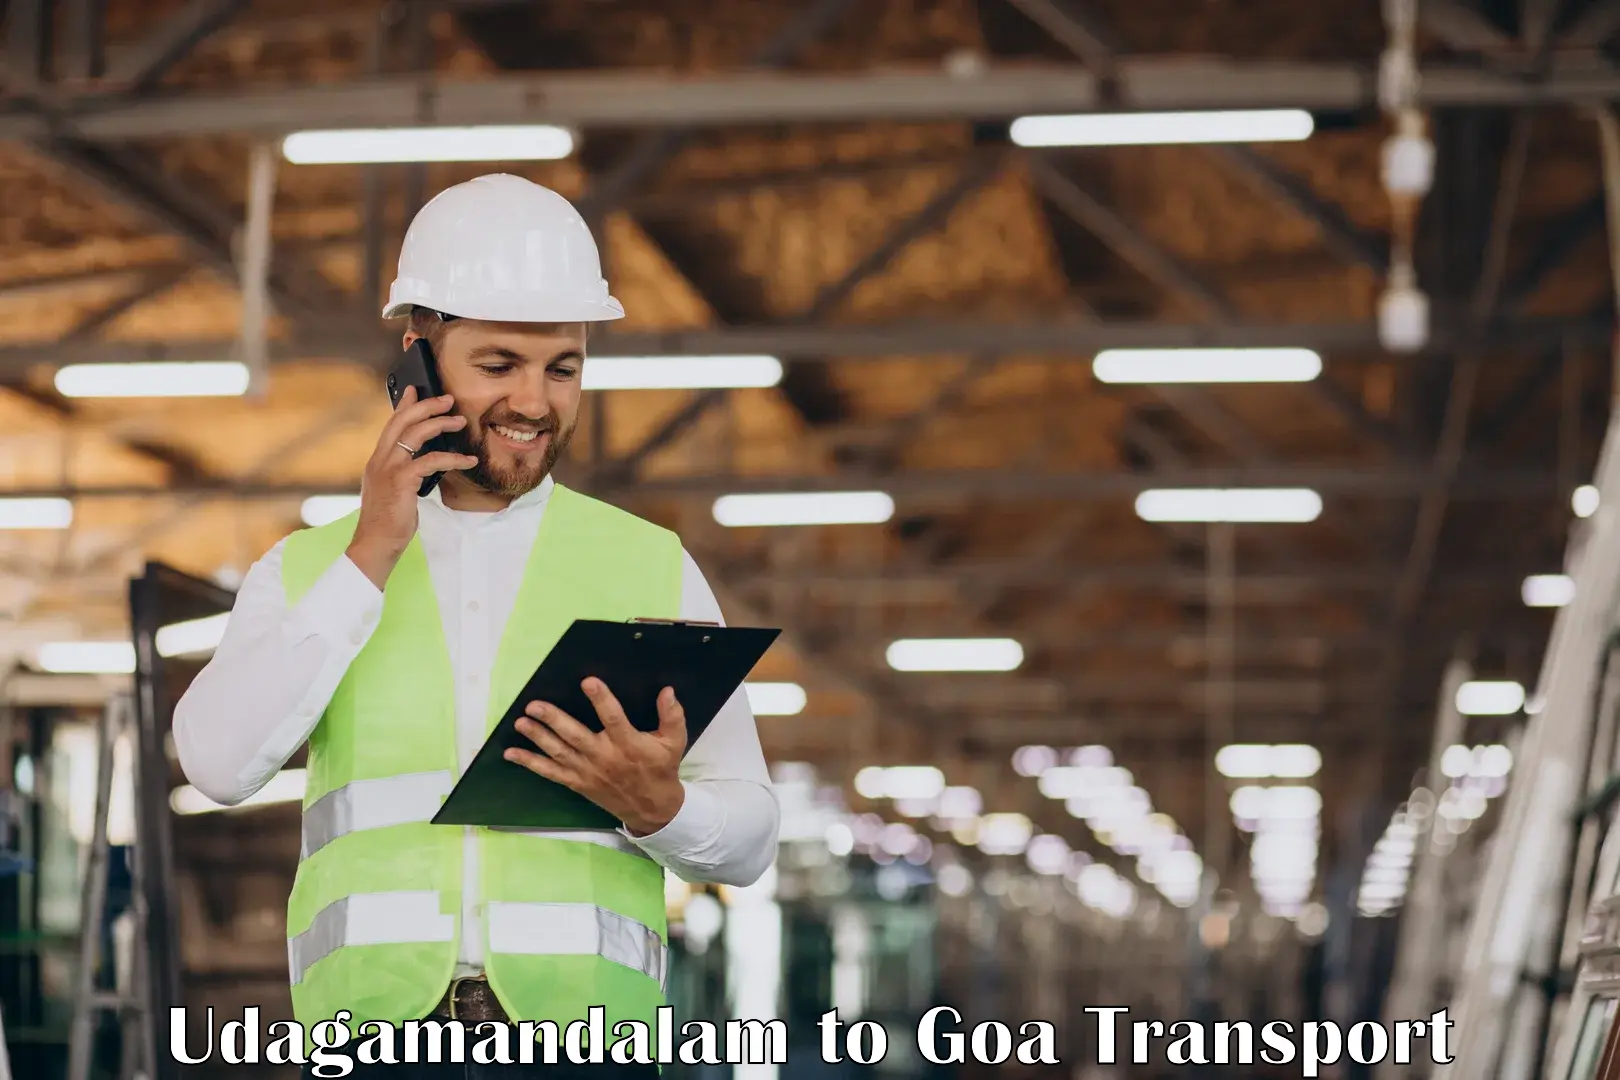 Lorry transport service Udagamandalam to IIT Goa